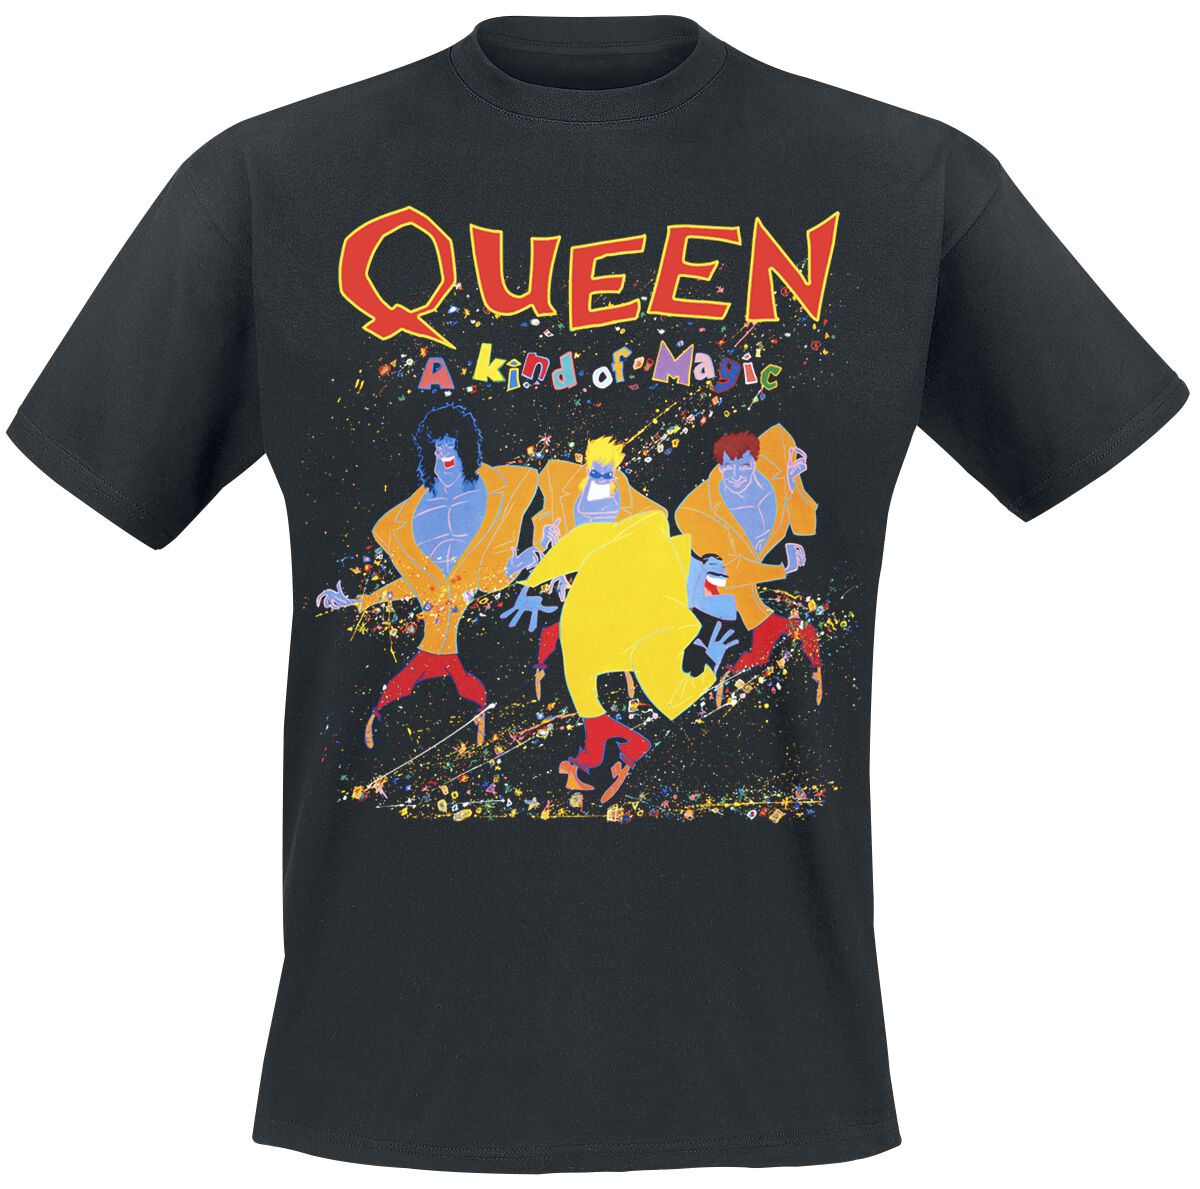 Queen T-Shirt - A Kind Of Magic - S bis 5XL - für Männer - Größe S - schwarz  - Lizenziertes Merchandise!